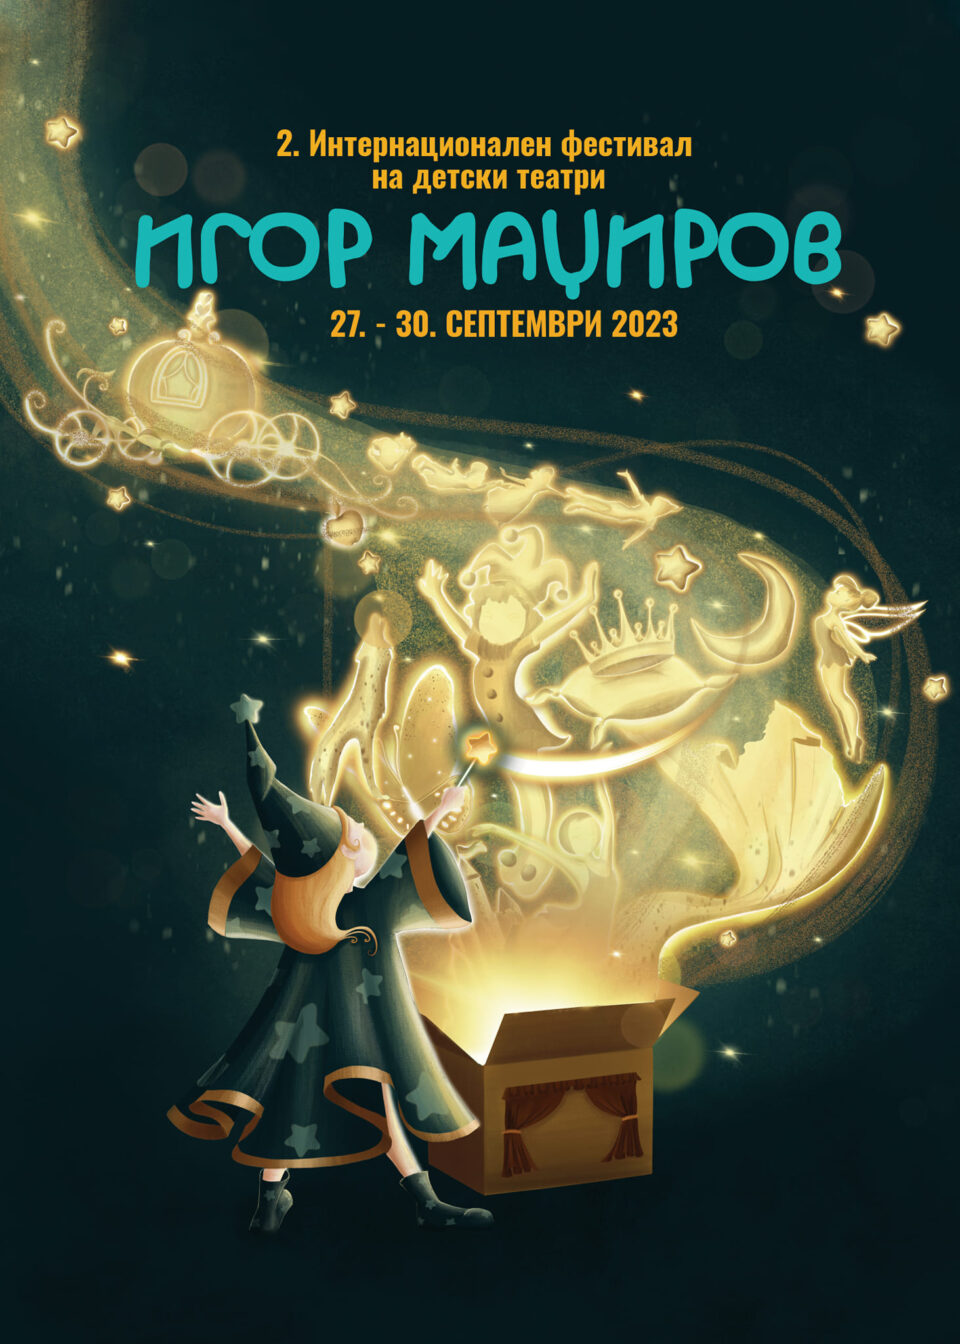 Второто издание на Интернационалниот фестивал на детски театари „Игор Маџиров“ ќе се одржи од 27 до 30 септември